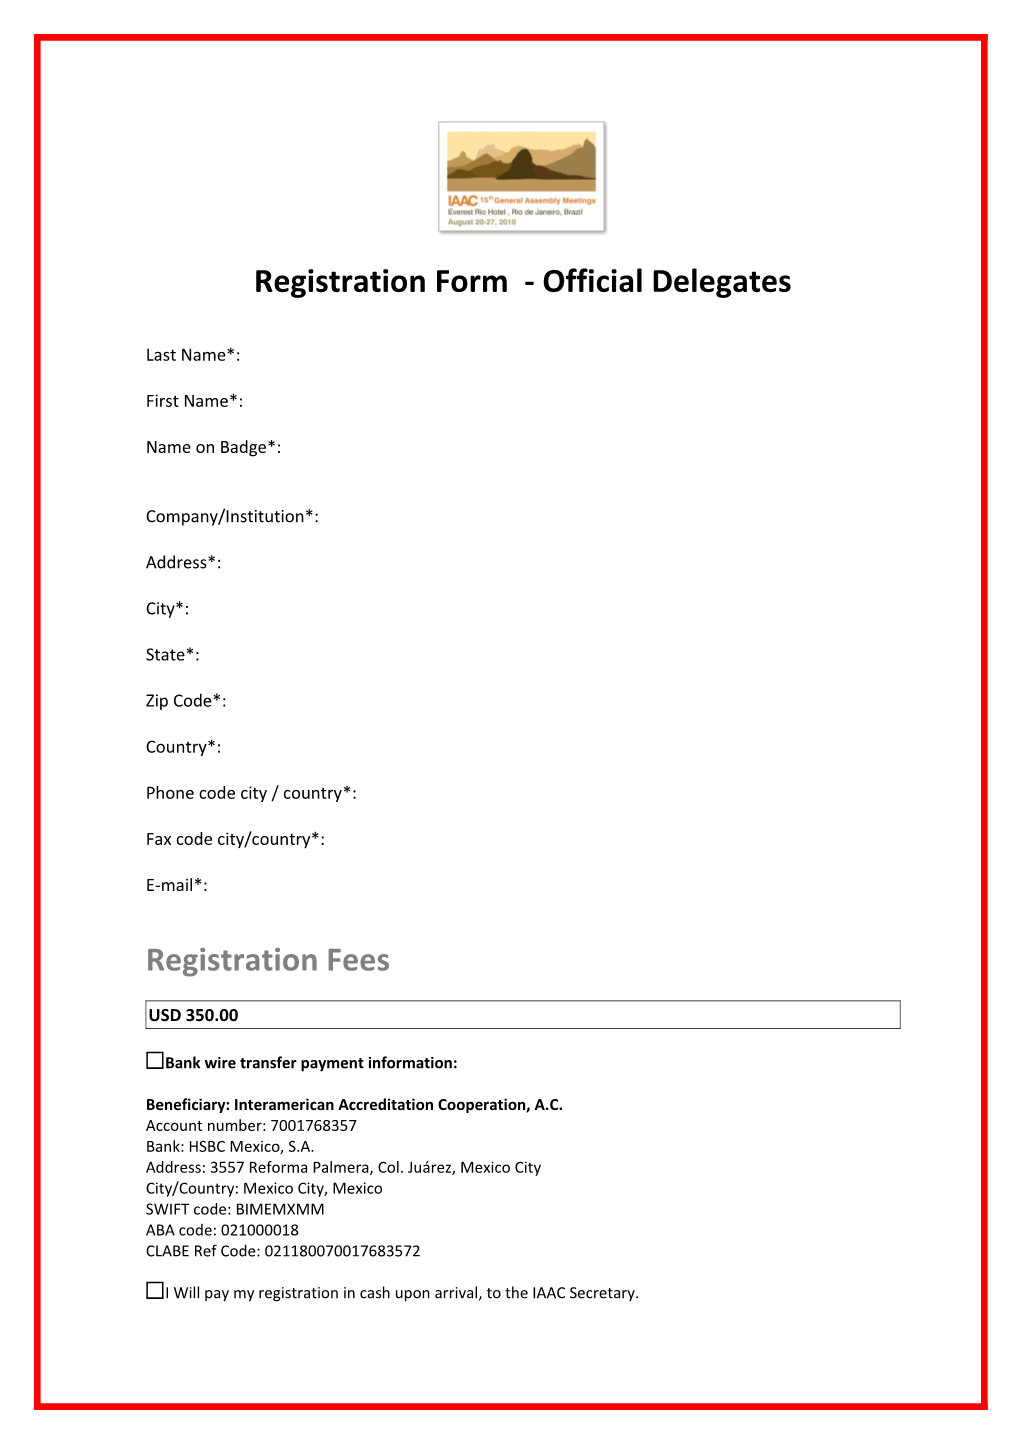 Registration Form - Official Delegates